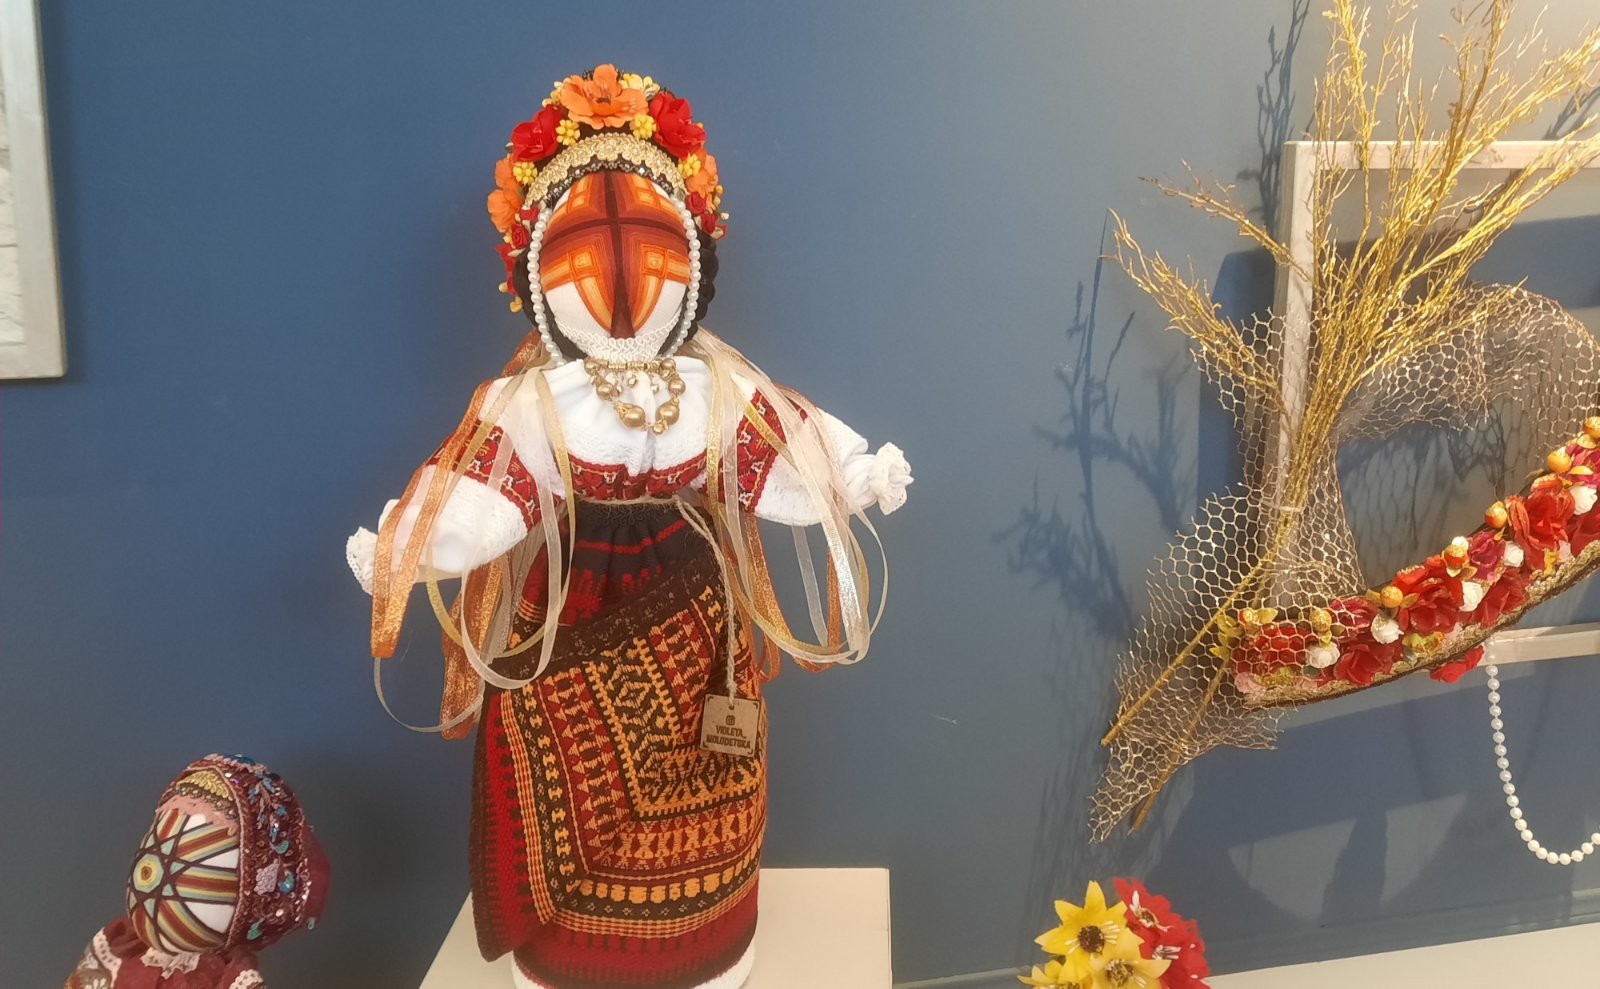 Хранительница украинских традиций из Аккермана, которая создает уникальные куклы-мотанки: фоторепортаж по открытию первой персональной арт-выставки Виолеты Молодецкой